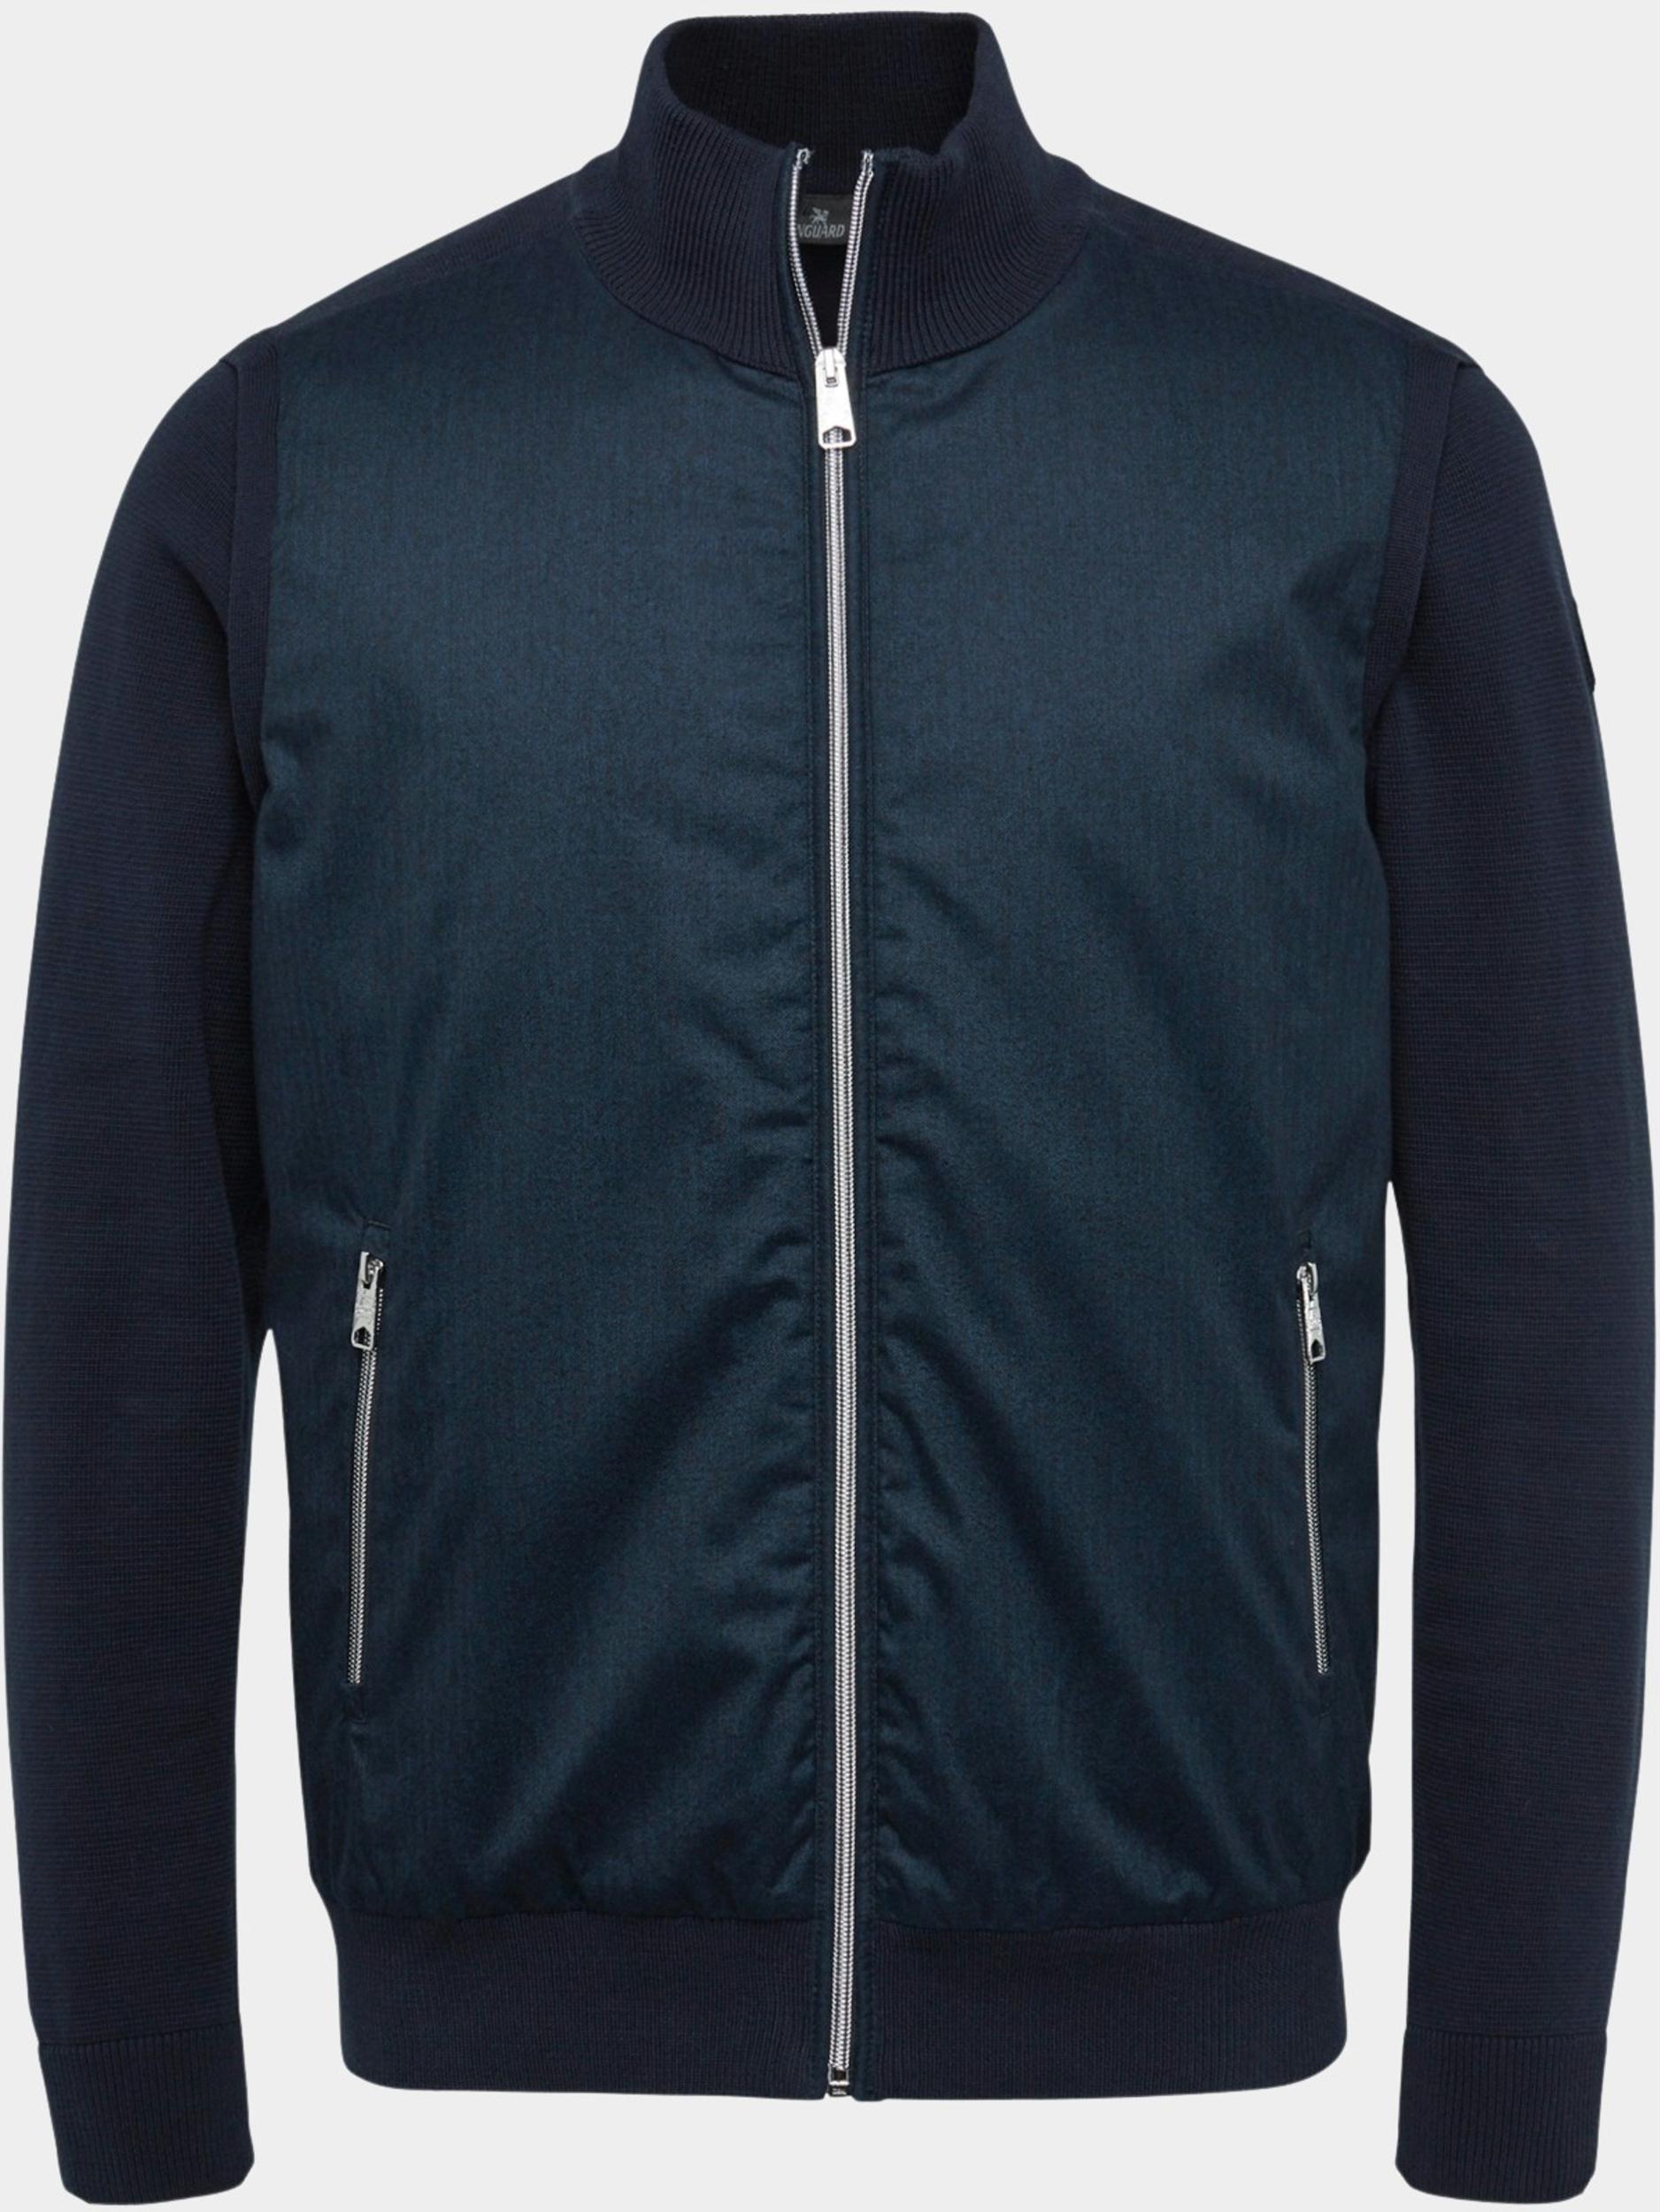 het doel Rijp zich zorgen maken Vanguard Vest Blauw Zip Jacket Cotton VKC2210336/5073 | Bos Men Shop